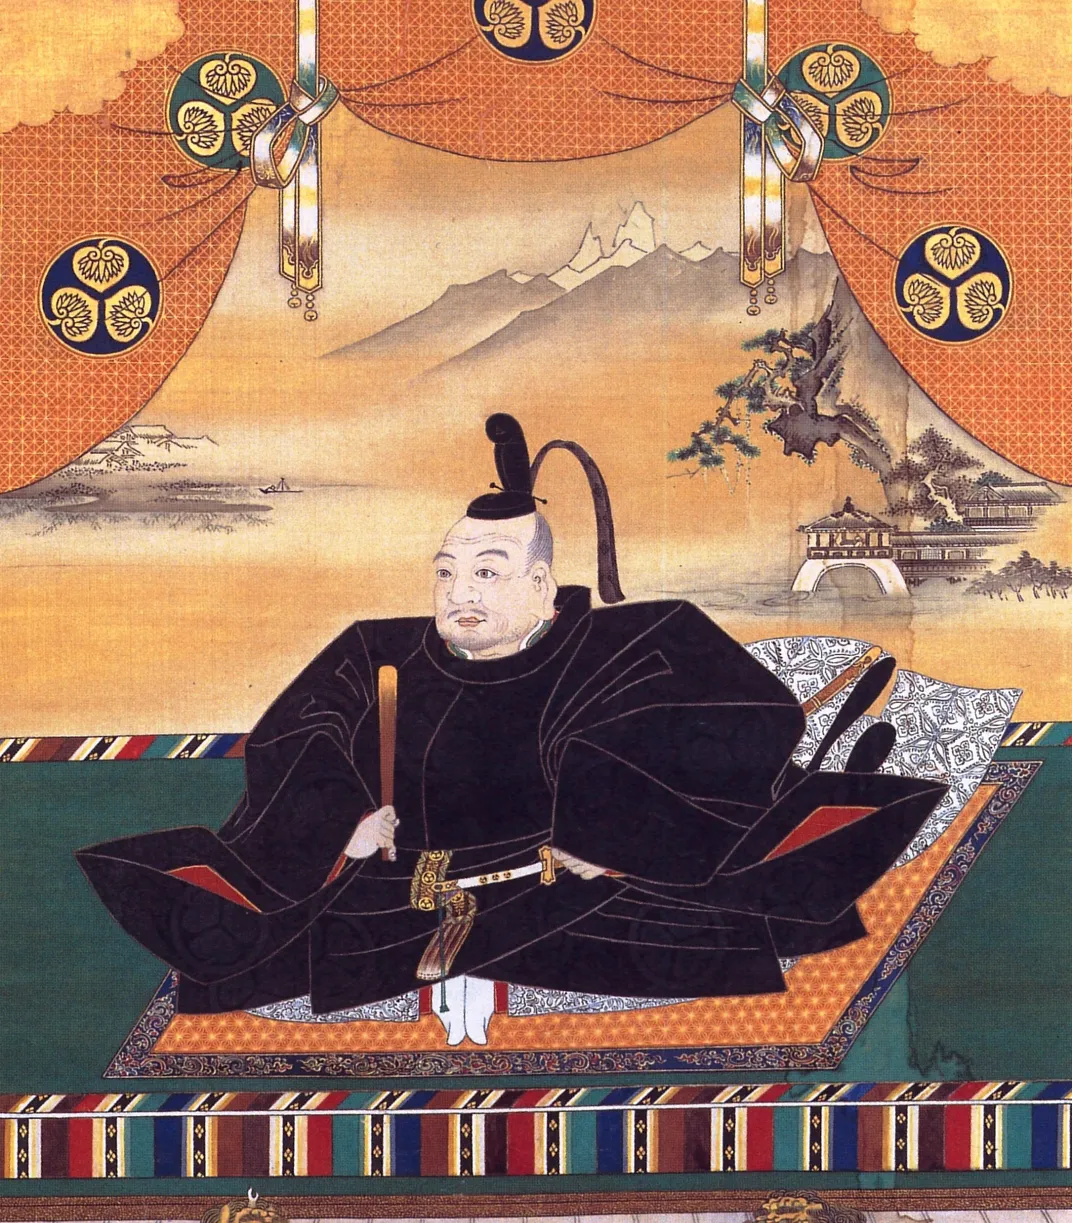 A portrait of Tokugawa Ieyasu